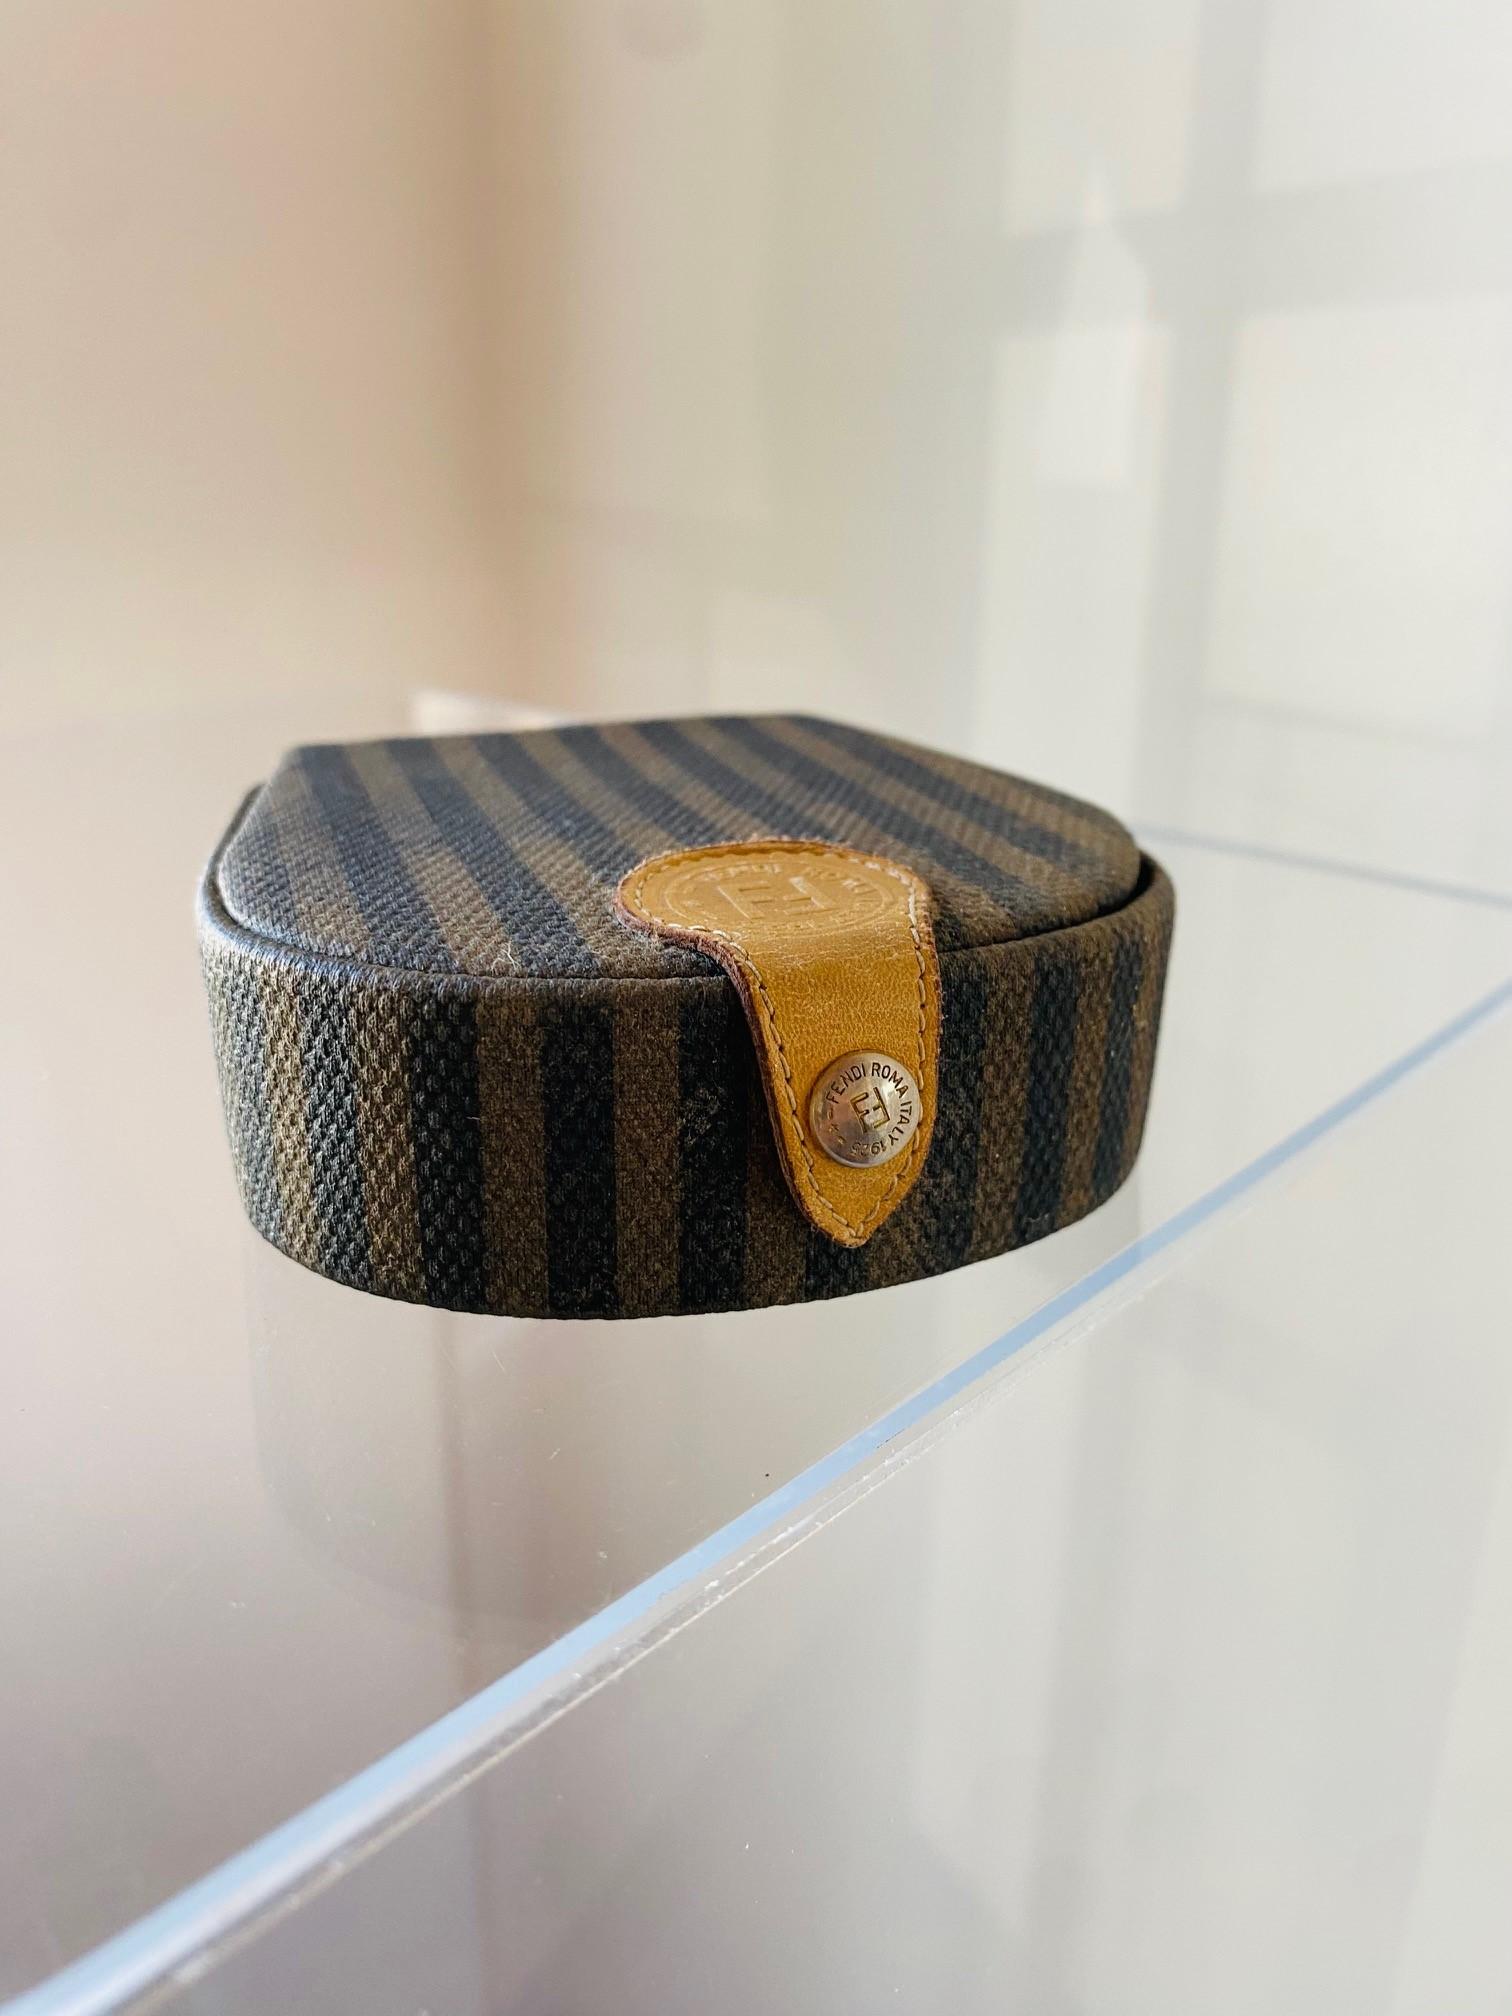 Einzigartige und interessante Schmuckschatulle von Fendi.  Dieses Vintage-Stück aus den frühen 1990er Jahren ist aus Leder gefertigt und mit dem klassischen Fendi-Streifenmuster überzogen.  Sie lässt sich mit einem Druckknopf mit Fendi-Logo öffnen